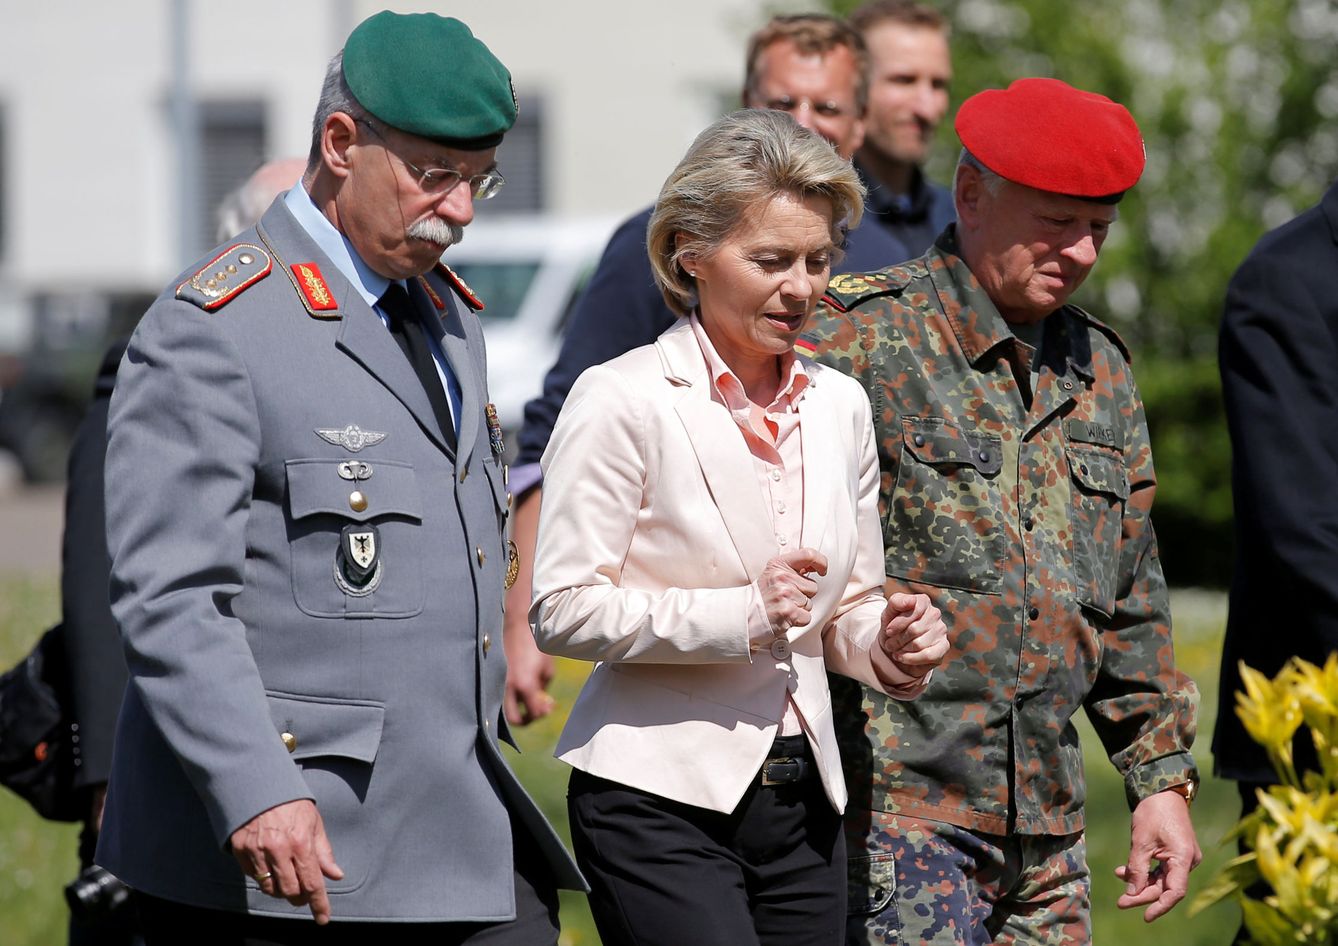 La ministra de Defensa Ursula von der Leyen con varios generales alemanes y franceses durante una visita a un cuartel conjunto en Estrasburgo, el 3 de mayo de 2017. (Reuters)